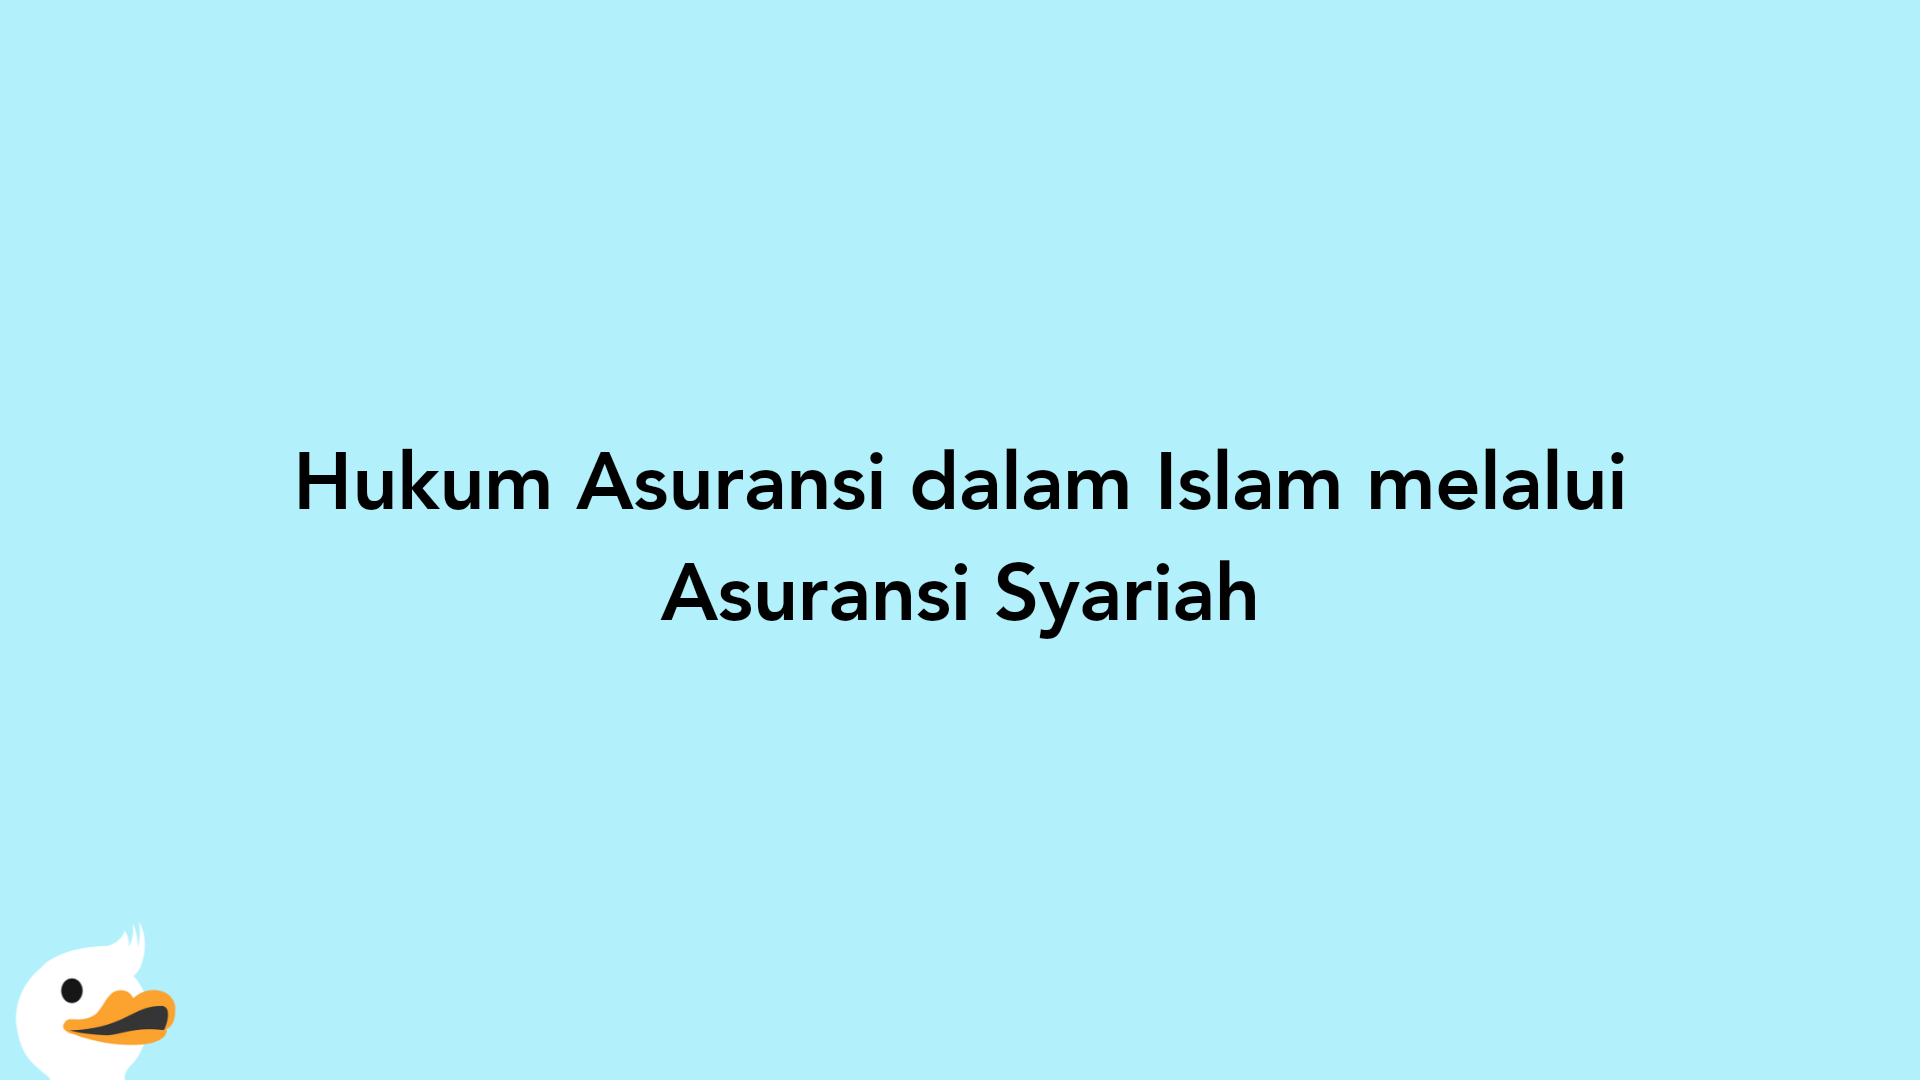 Hukum Asuransi dalam Islam melalui Asuransi Syariah